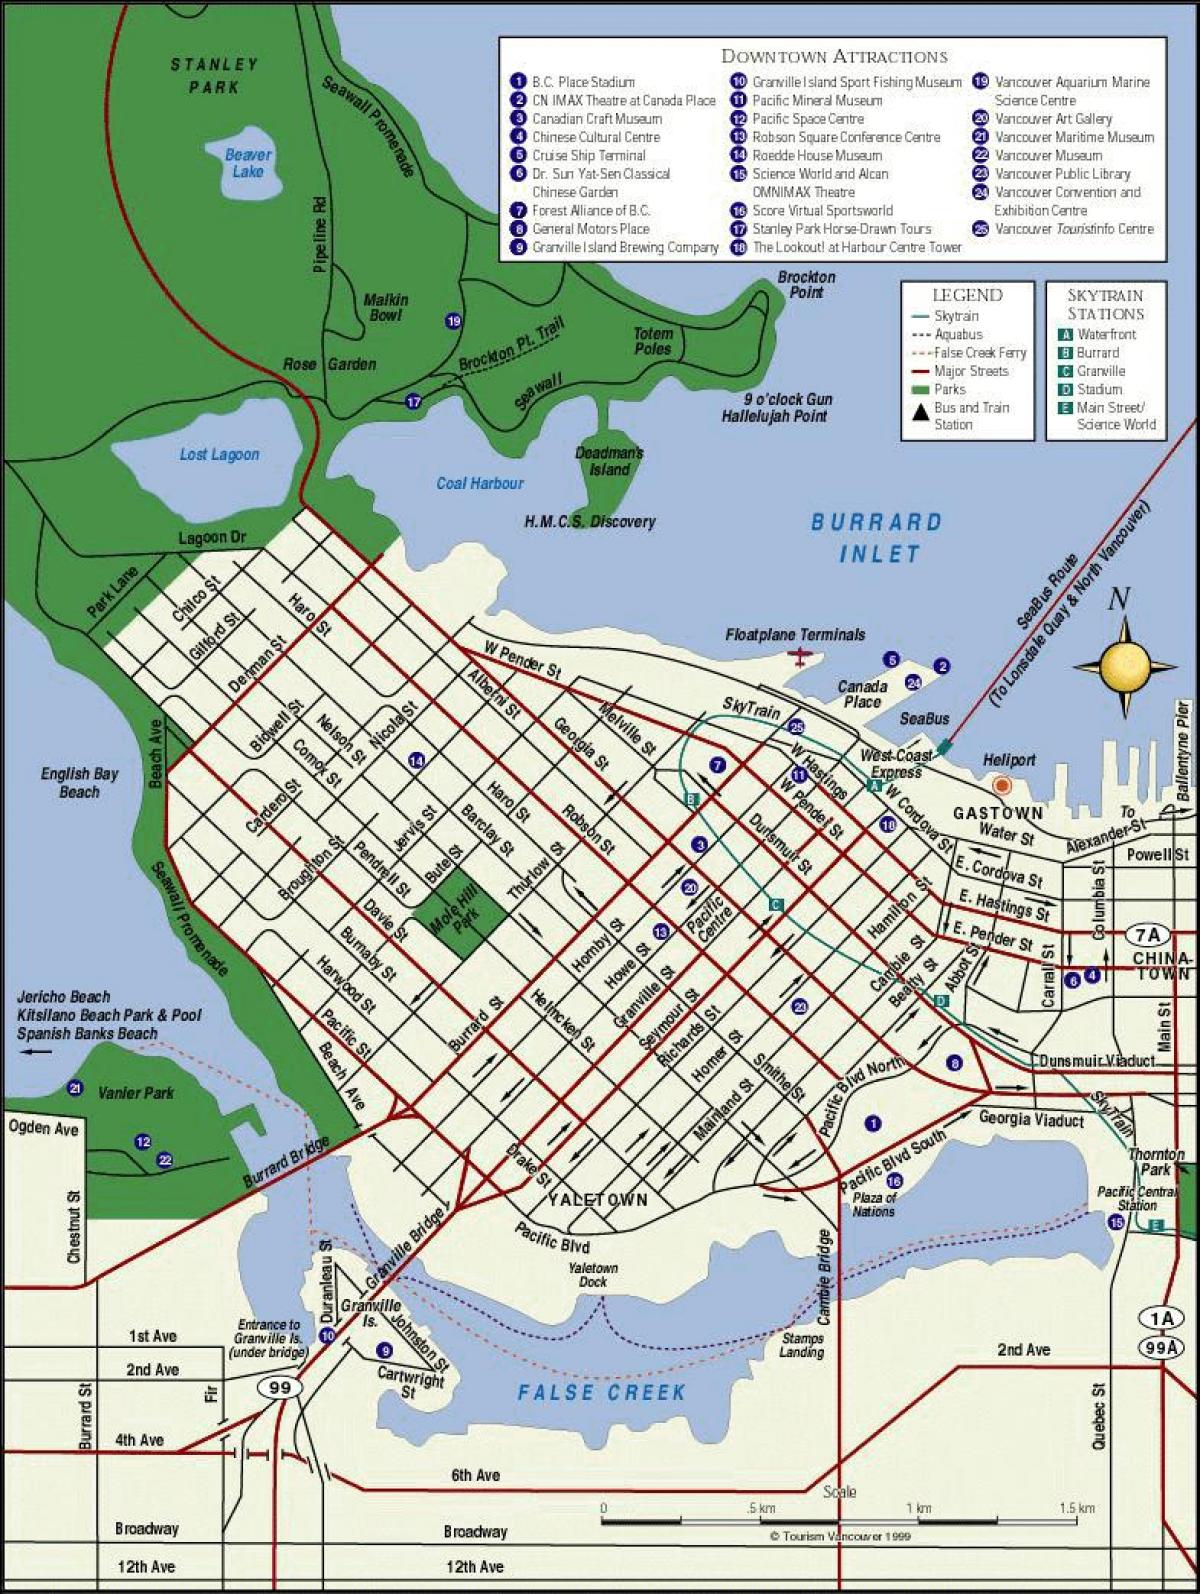 Zemljevid vancouver središče mesta